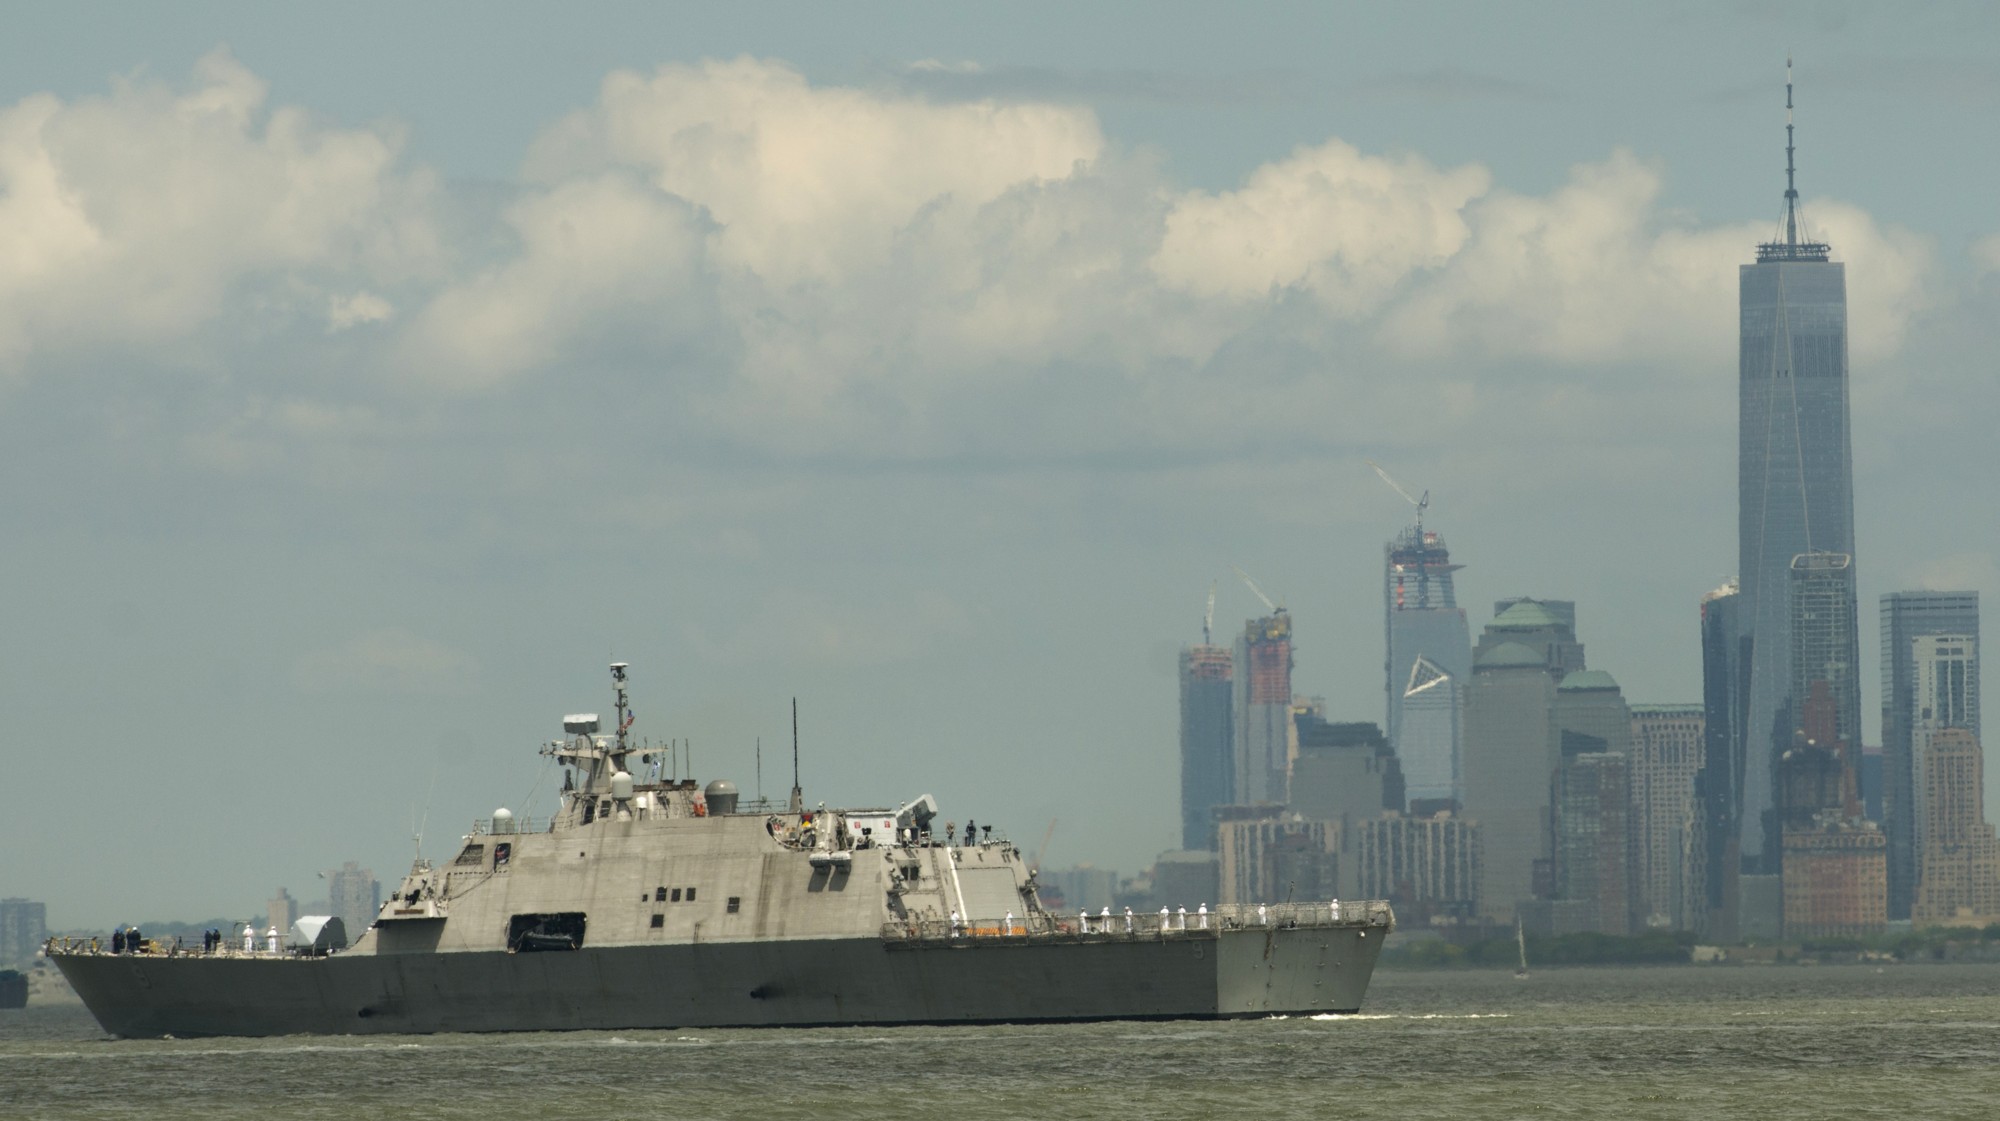 lcs-9 uss little rock freedom class littoral combat ship us navy 44 fleet week new york